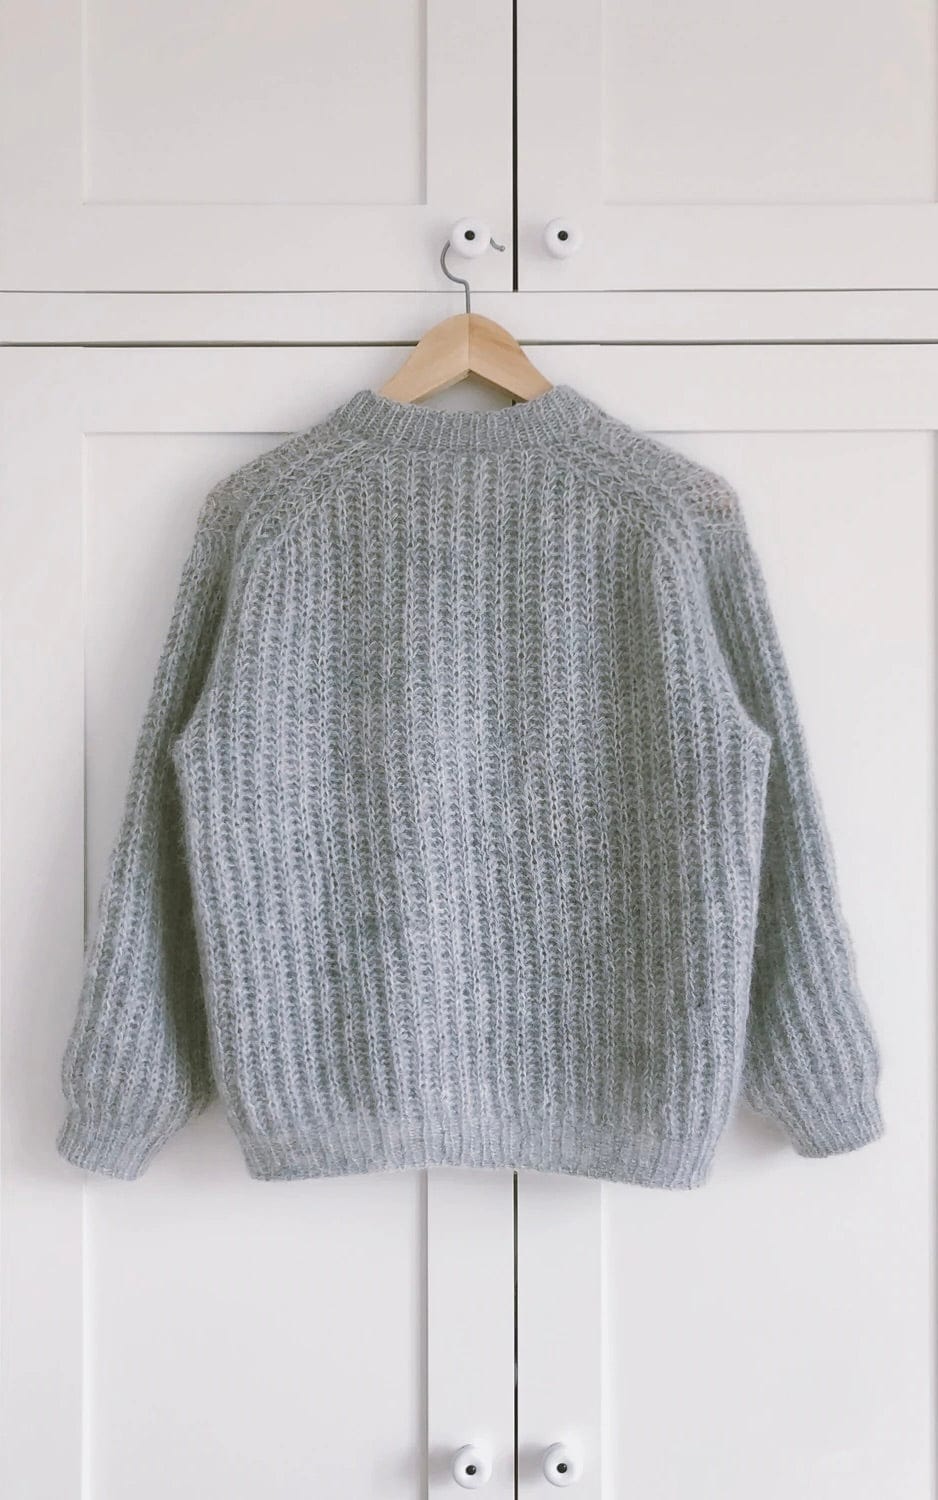 September Sweater - TYNN SILK MOHAIR - Strickset von PETITE KNIT jetzt online kaufen bei OONIQUE